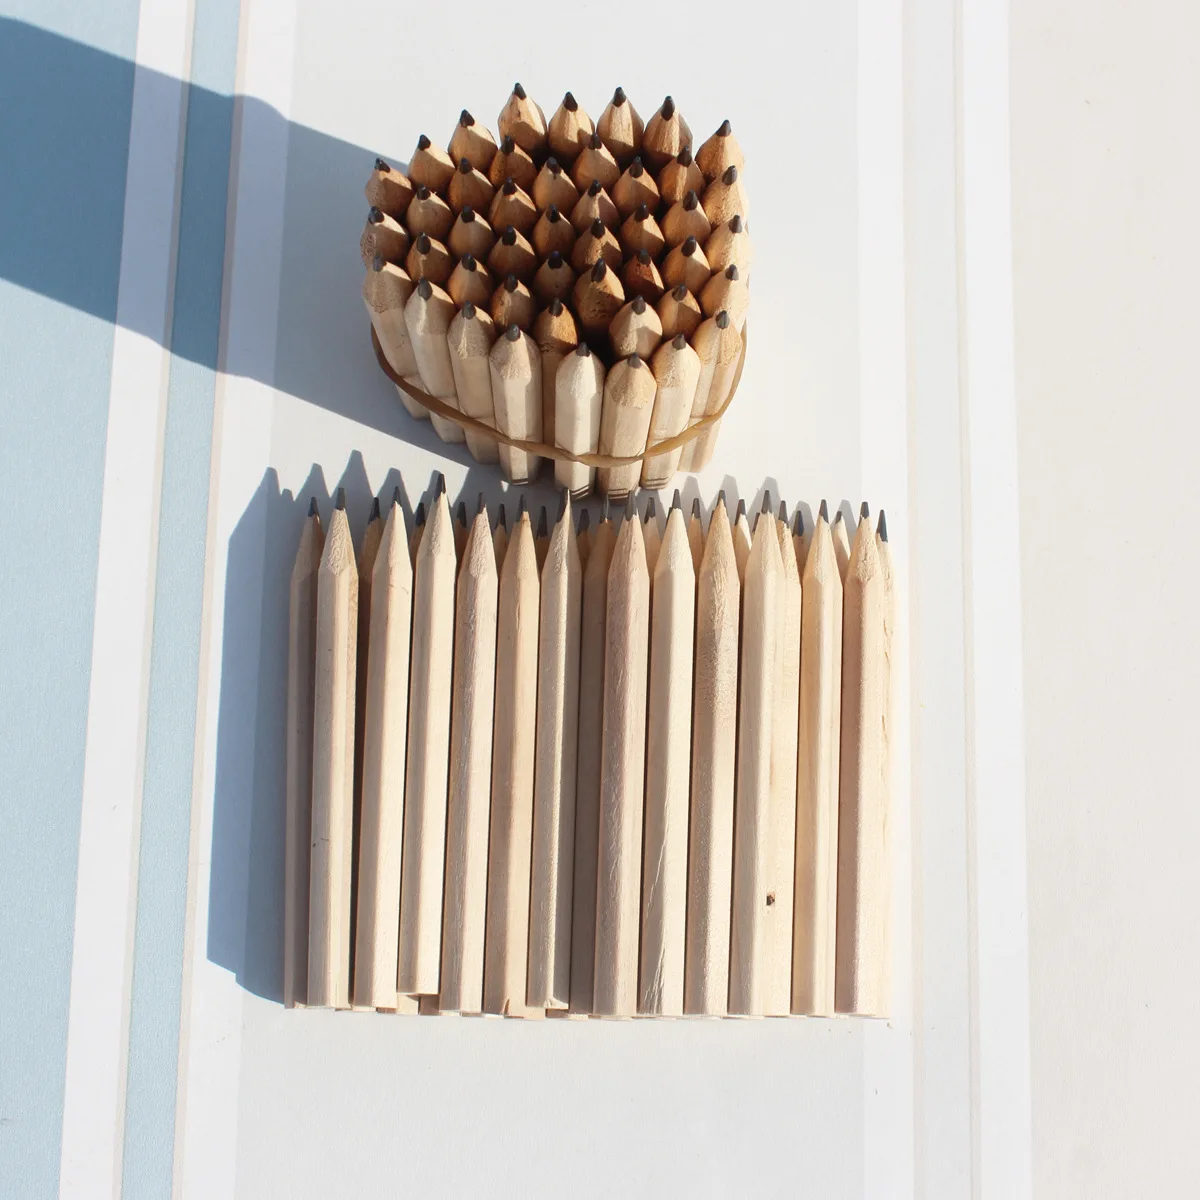 3,5 дюймов 100 шт./лот HB деревянный карандаш, студентов карандаш для эскизов Канцтовары школьных принадлежностей поставки экологически чистые фасовские оптовые продажи